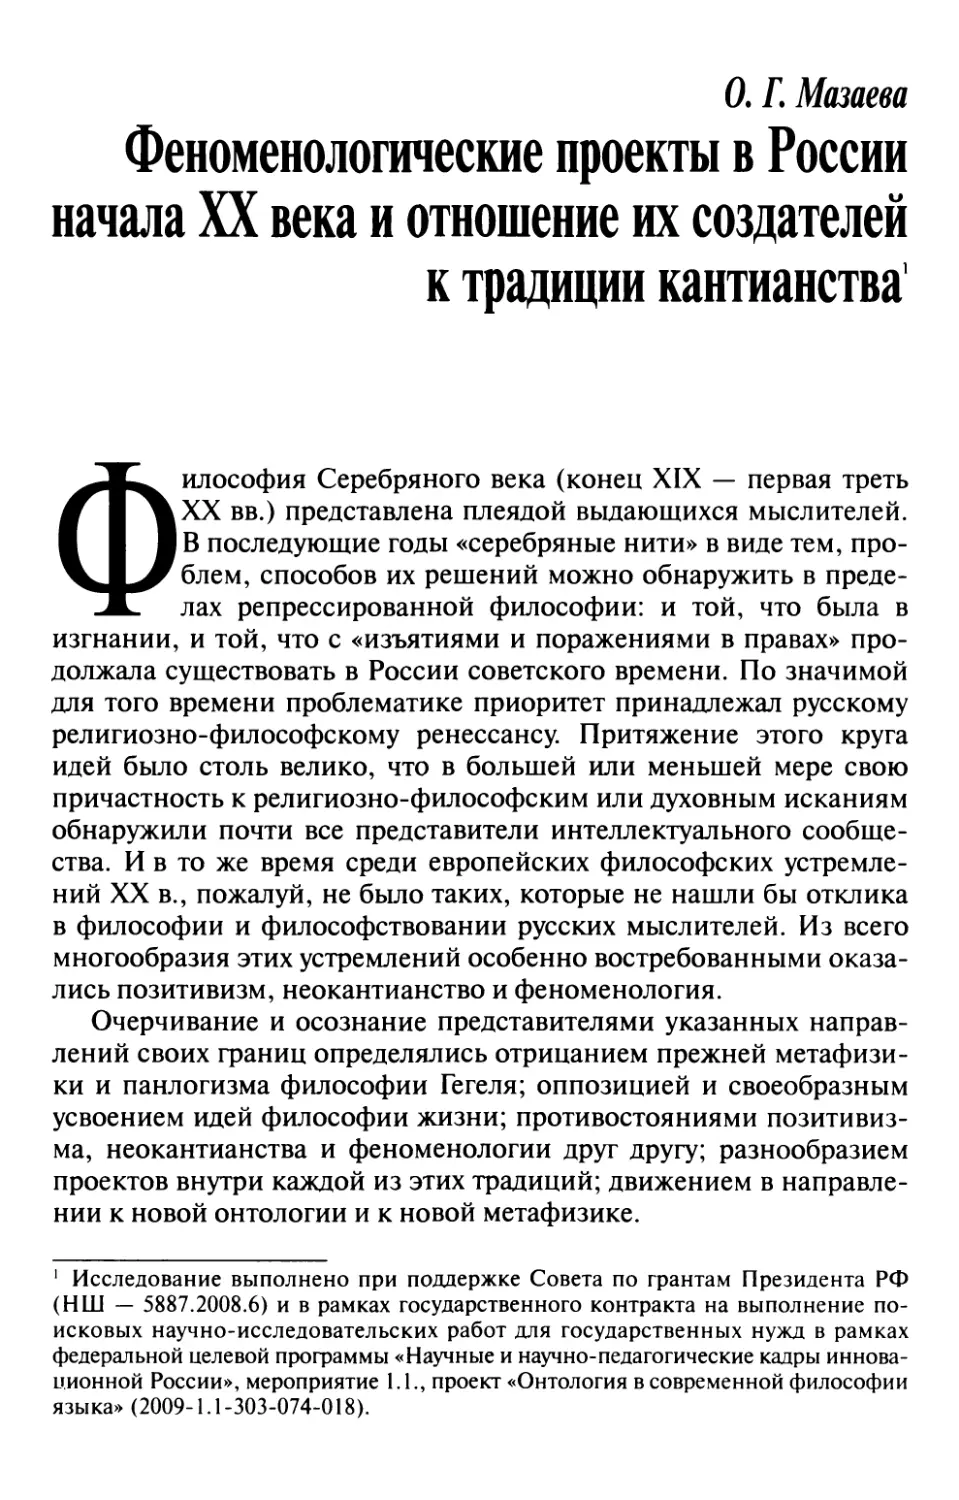 Мазаева О.Г. Феноменологические проекты в России начала XX века и отношение их создателей к традиции кантианства